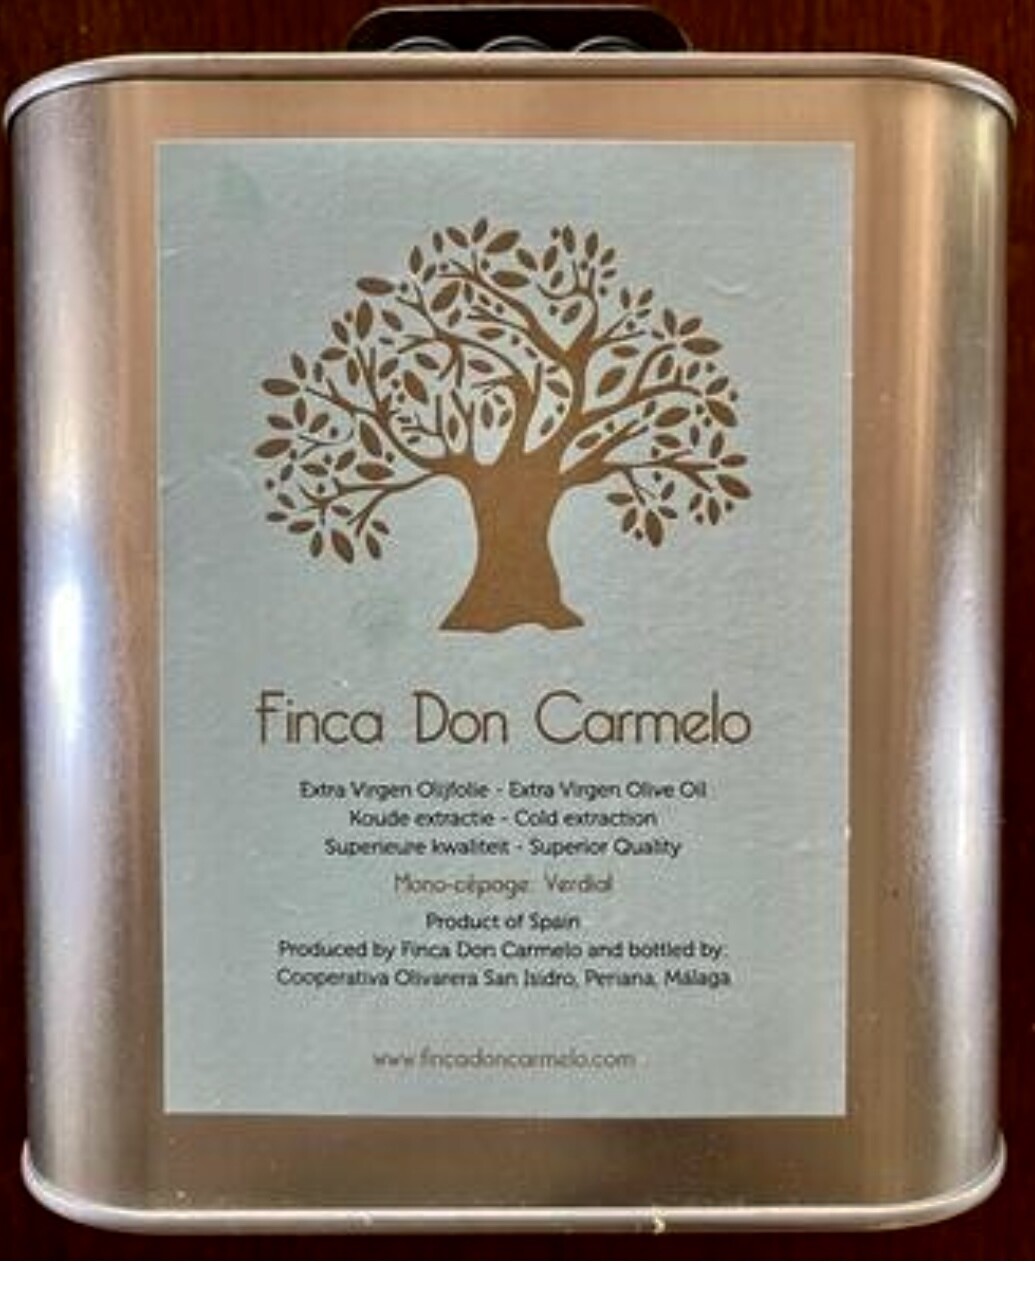 Finca Don Carmelo´s 100% biologische Extra Virgen olijfolie, blik 2,5 liter. Vroege oogst!